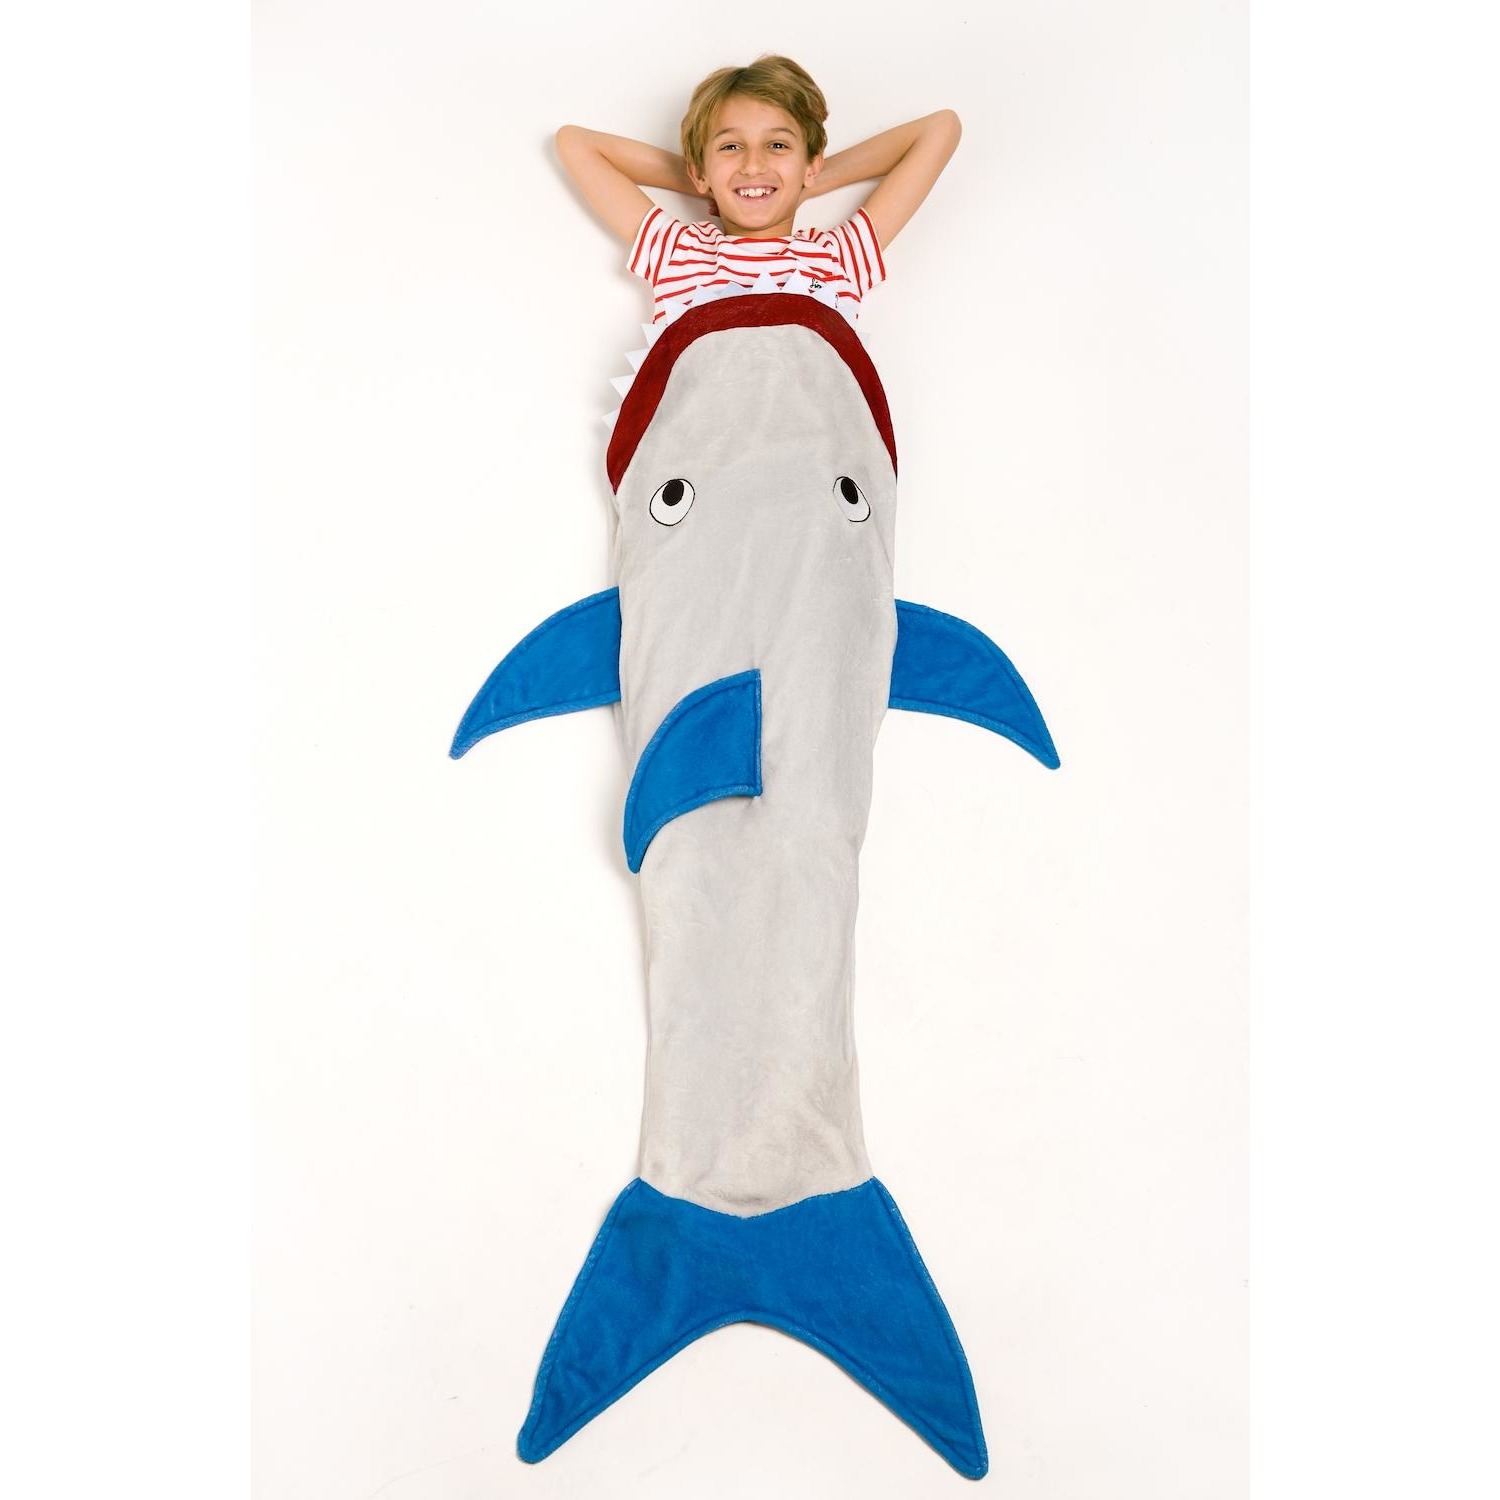 Immagine per Coperta Kanguru kids fantasia Shark Blanket lunghezza 142cm da DIMOStore